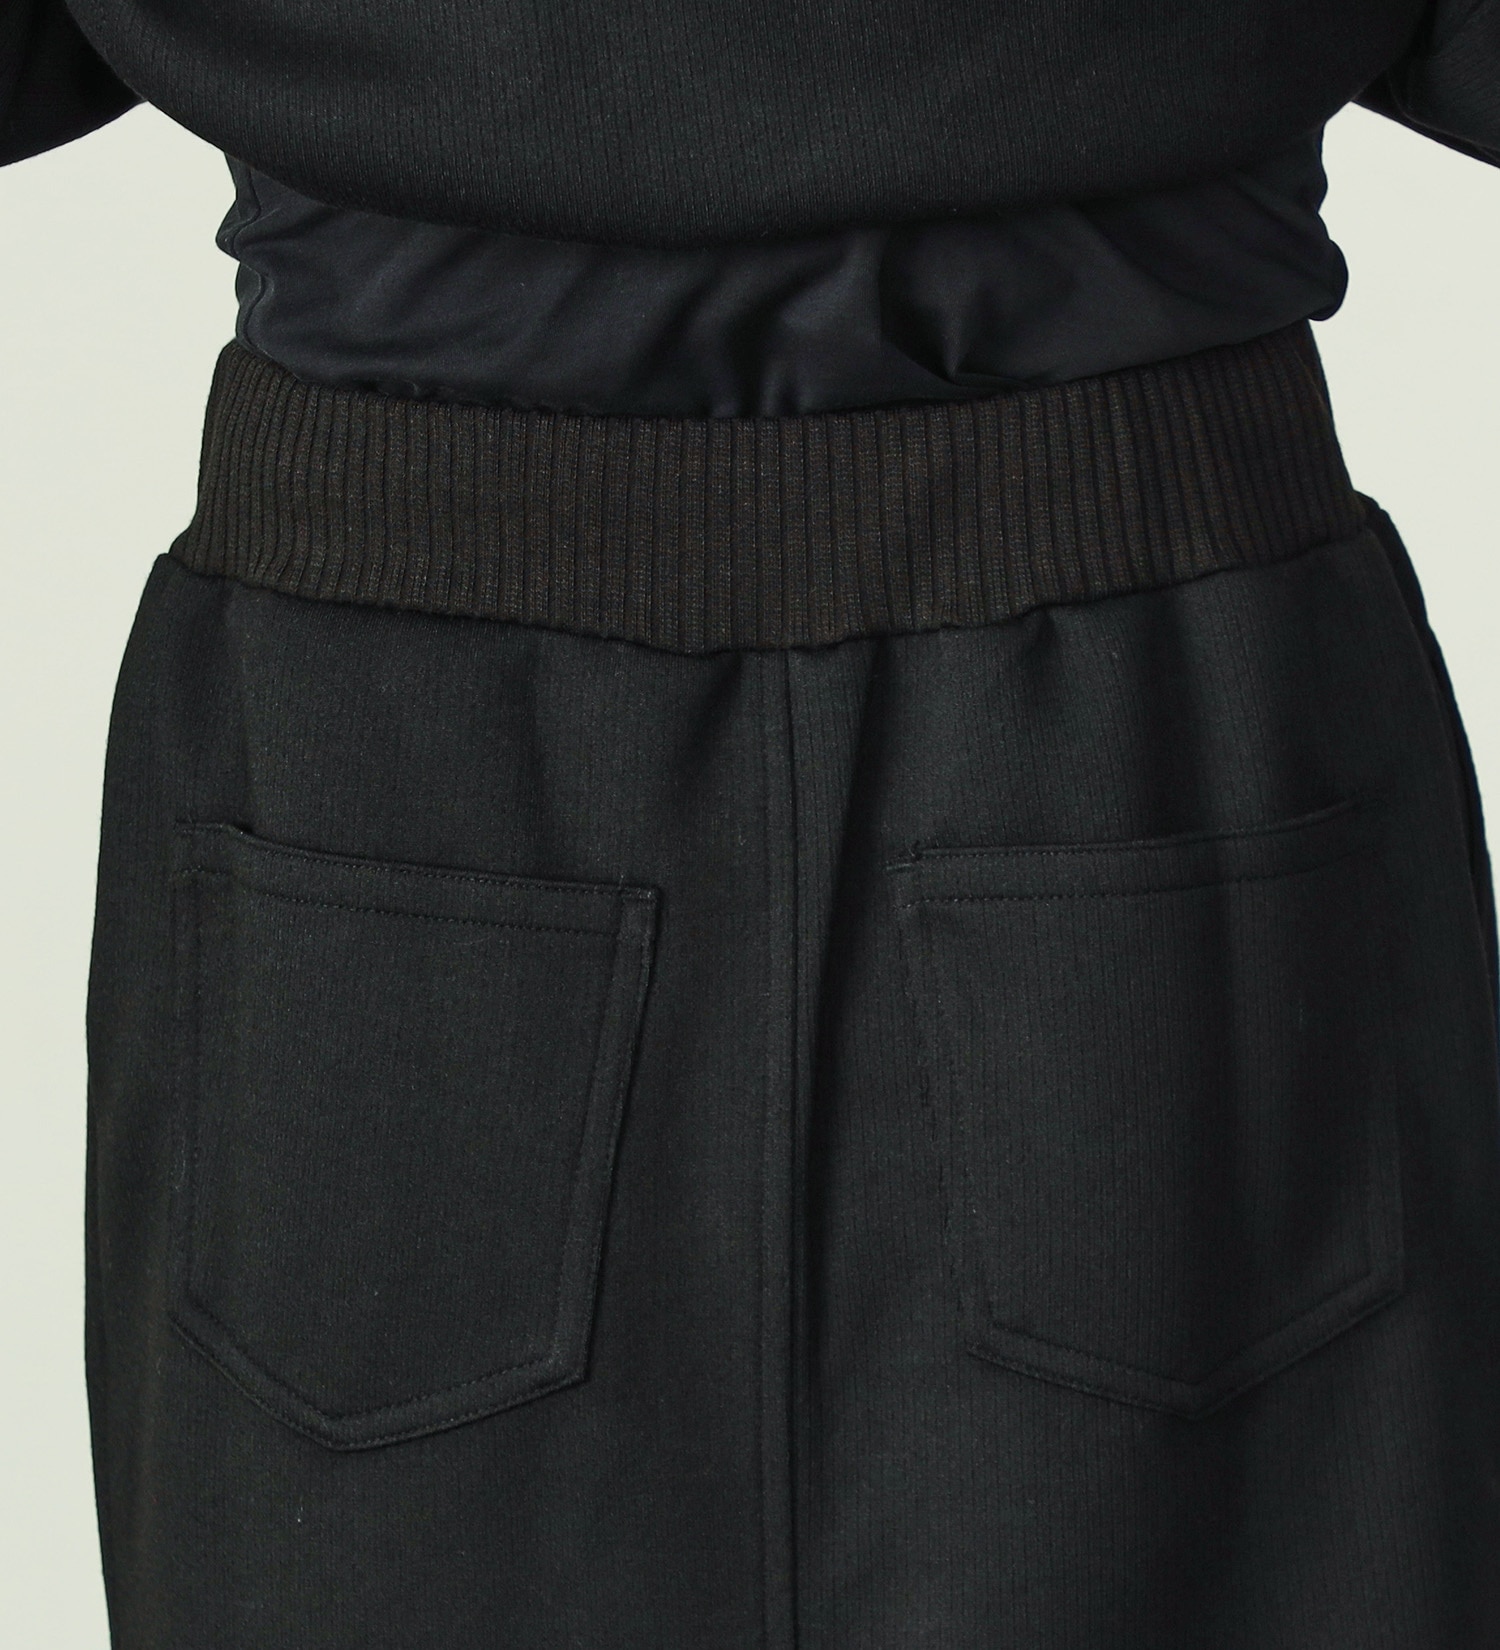 EDWIN(エドウイン)の【SALE】リブタイトスカート【アウトレット店舗・WEB限定】|スカート/スカート/レディース|ブラック